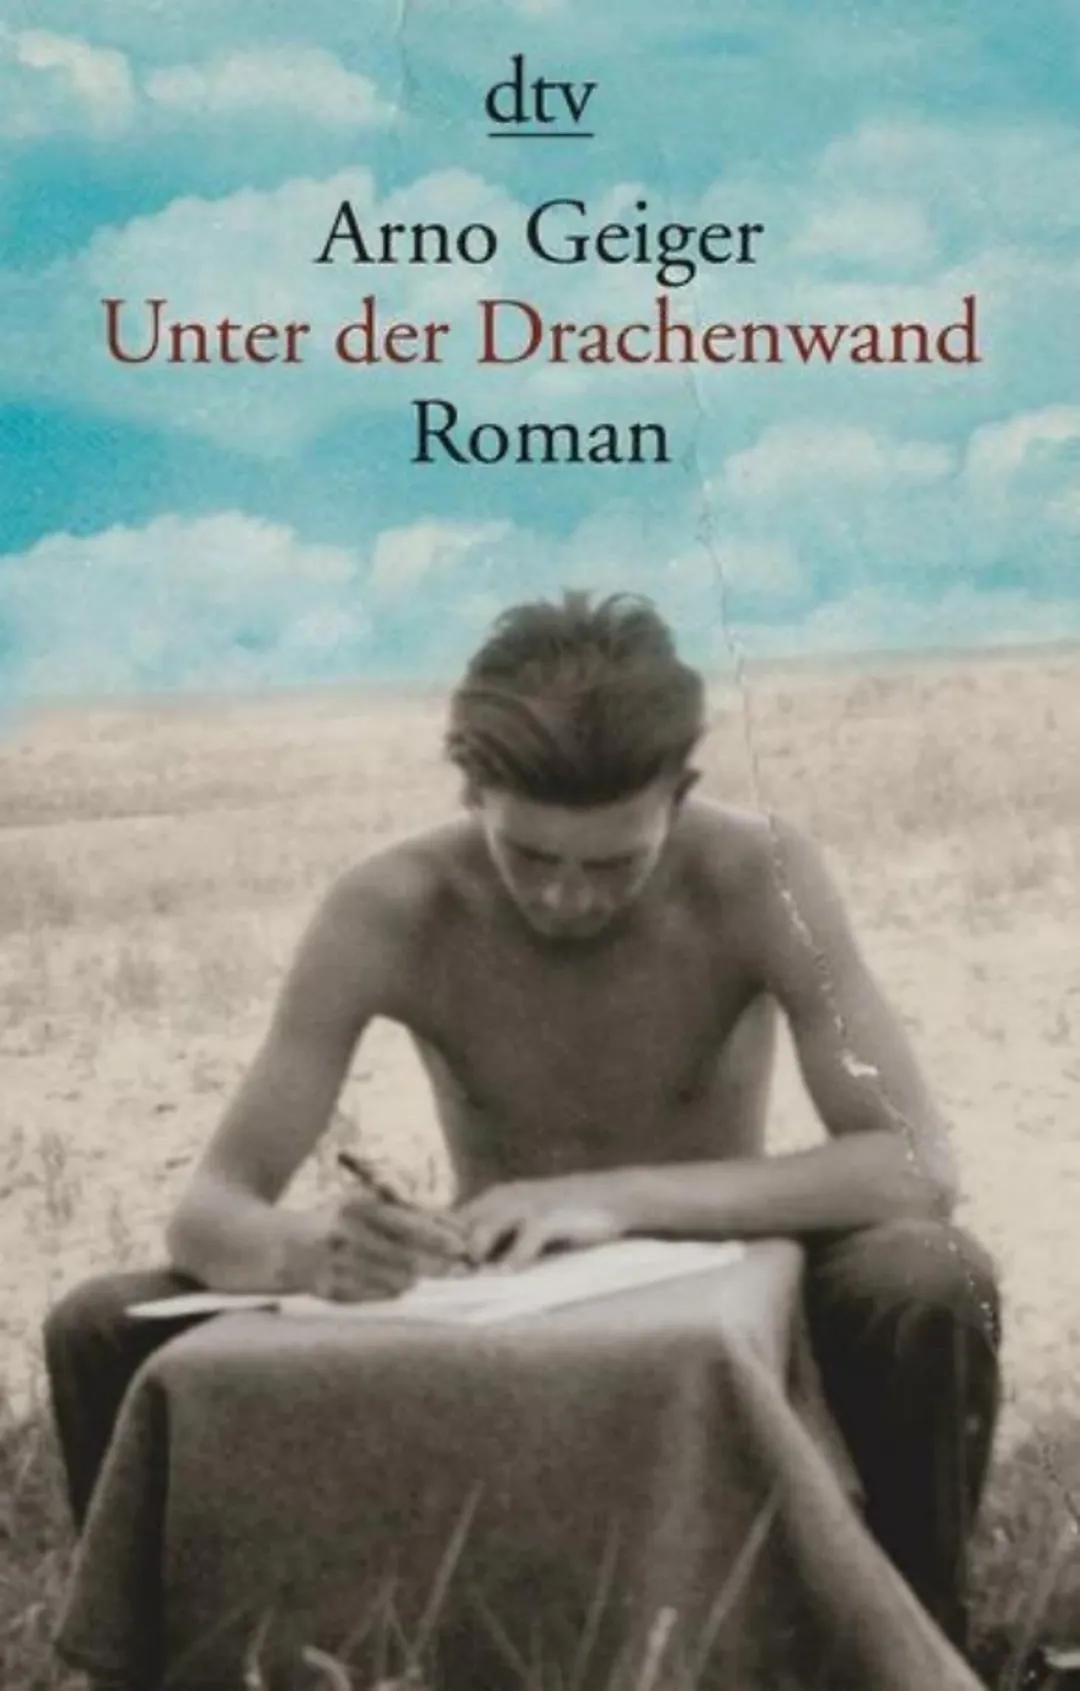 dtv
Arno Geiger
Unter der Drachenwand
Roman INFORMATIONEN
Titel: Unter der Drachenwand
Autor: Arno Gir
Genre: Brief-/Tagebuchroman
Erscheinu